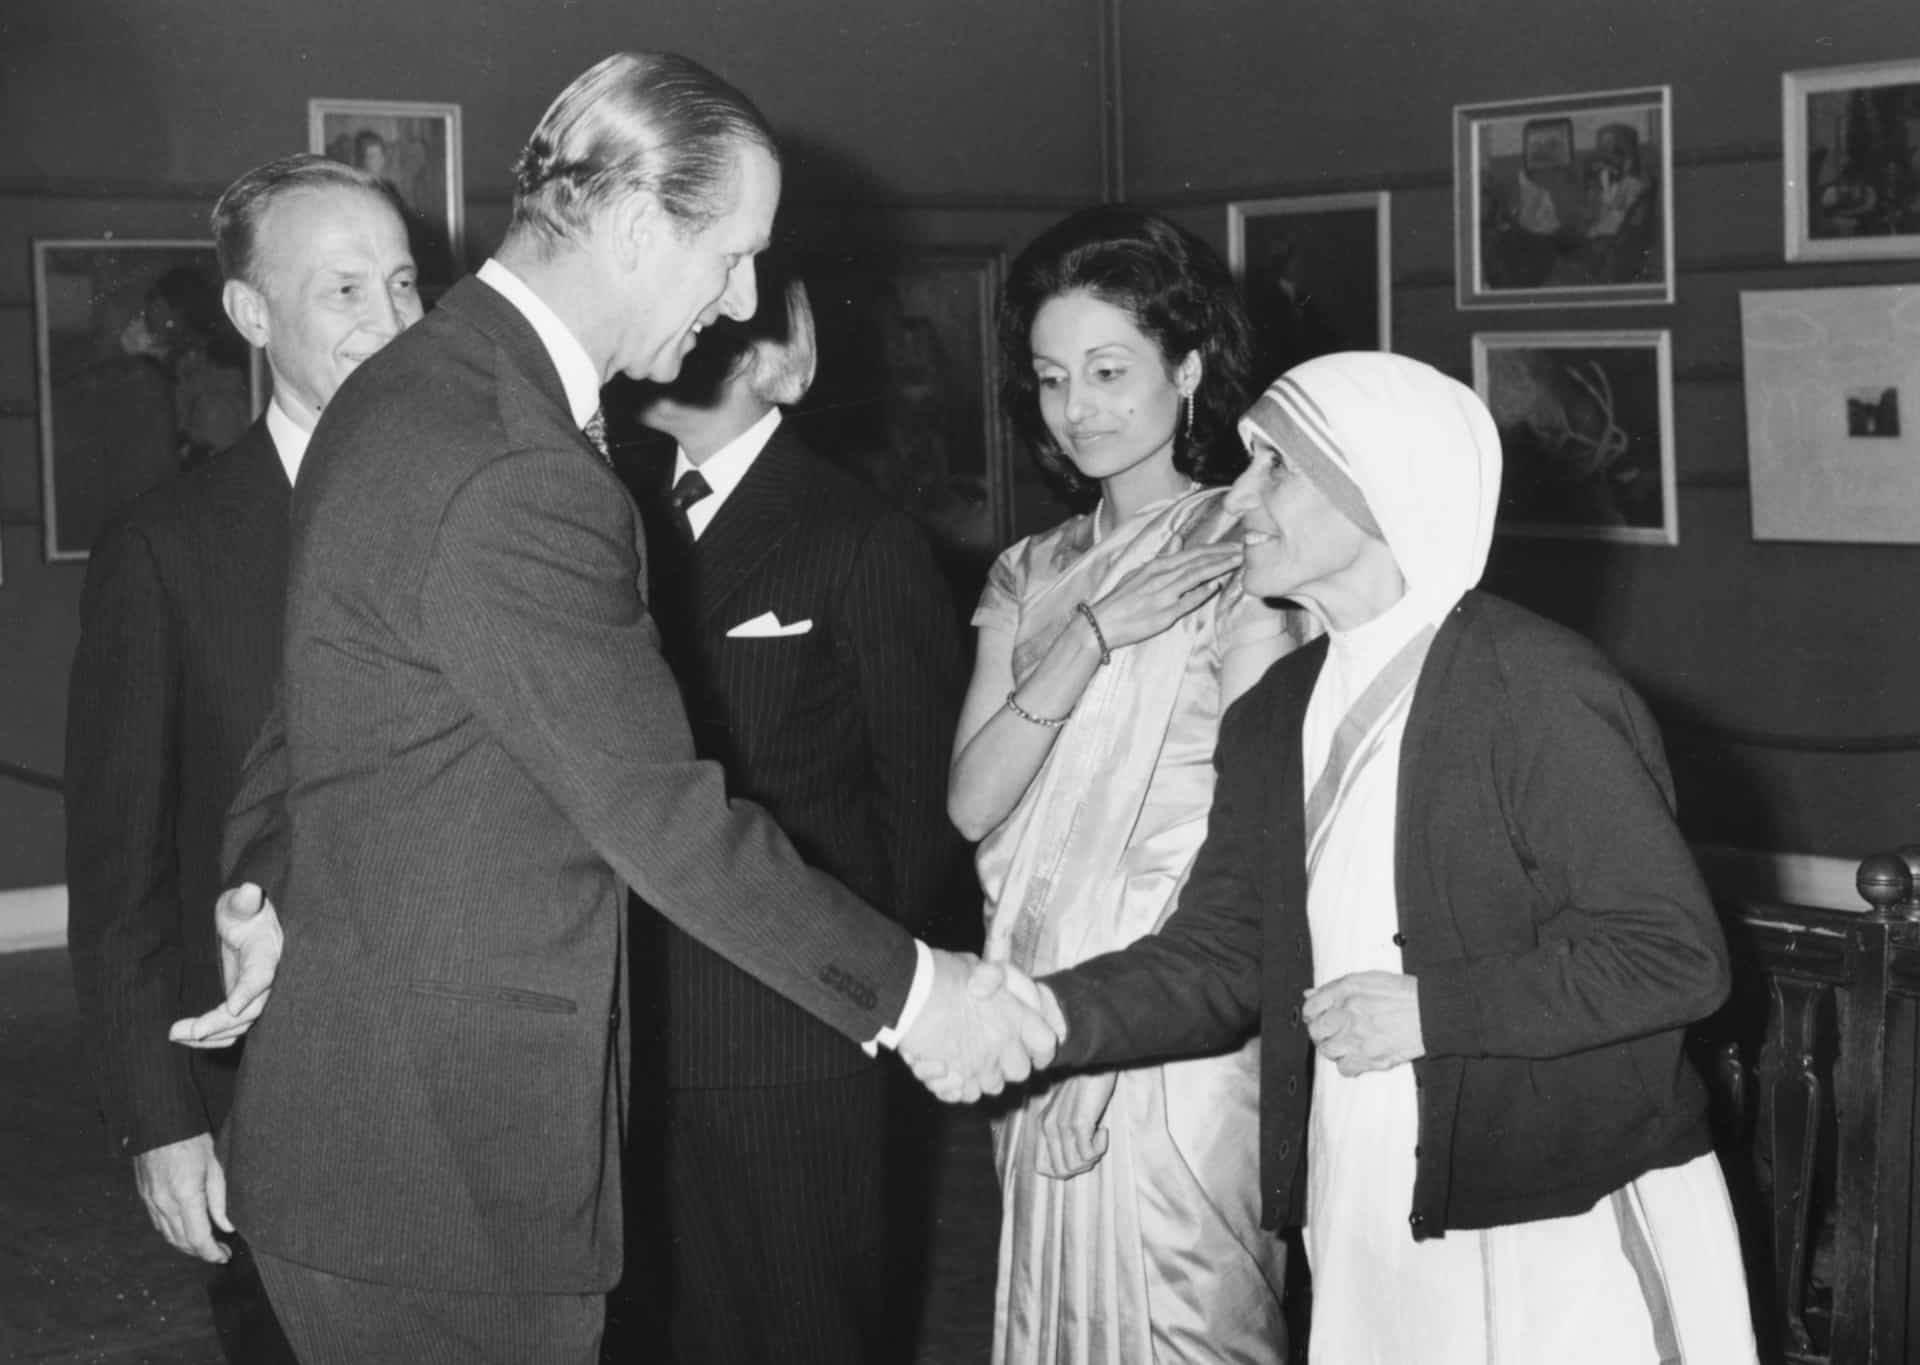 Hablando con la Madre Teresa, cuando esta recibió un premio de 34.000 libras por los progresos en la religión en una ceremonia en Calcuta (ahora Kolkata), en la India, en 1973.